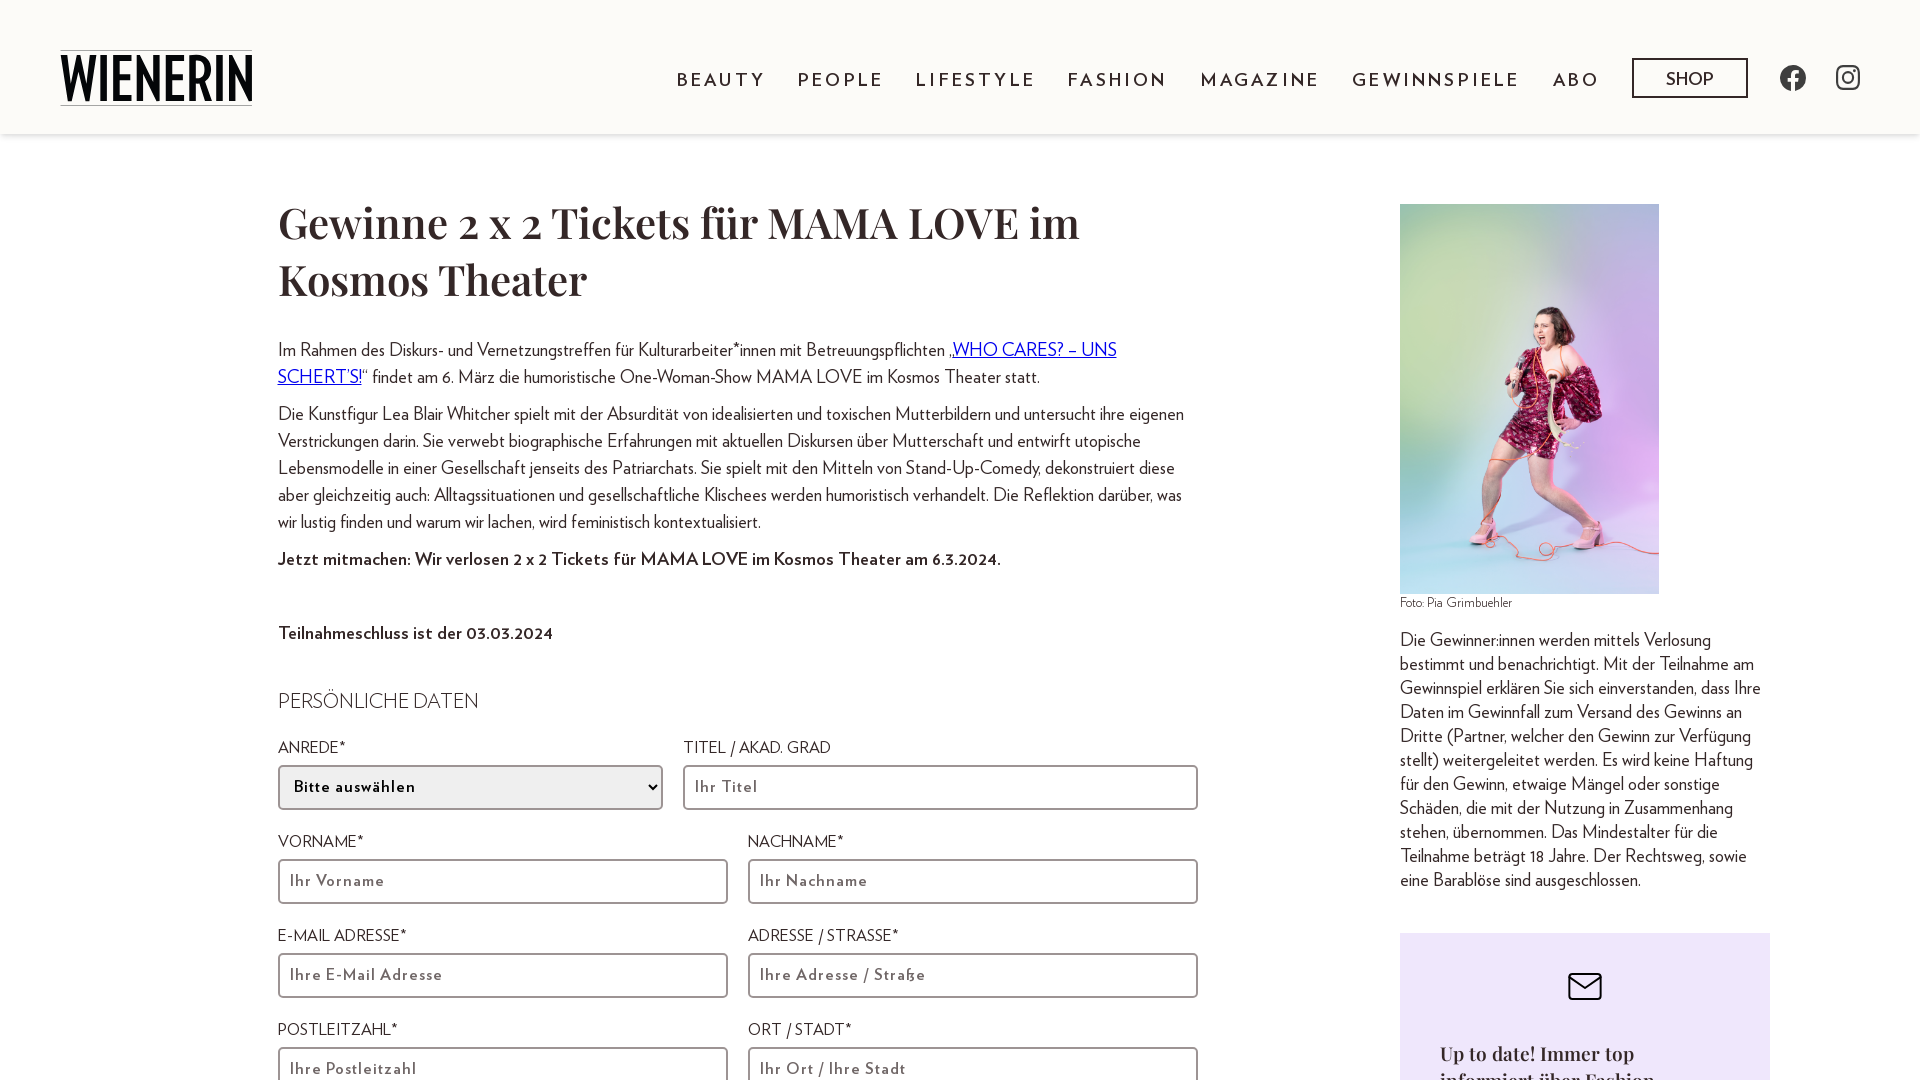 2 x 2 Tickets für MAMA LOVE im Kosmos Theater